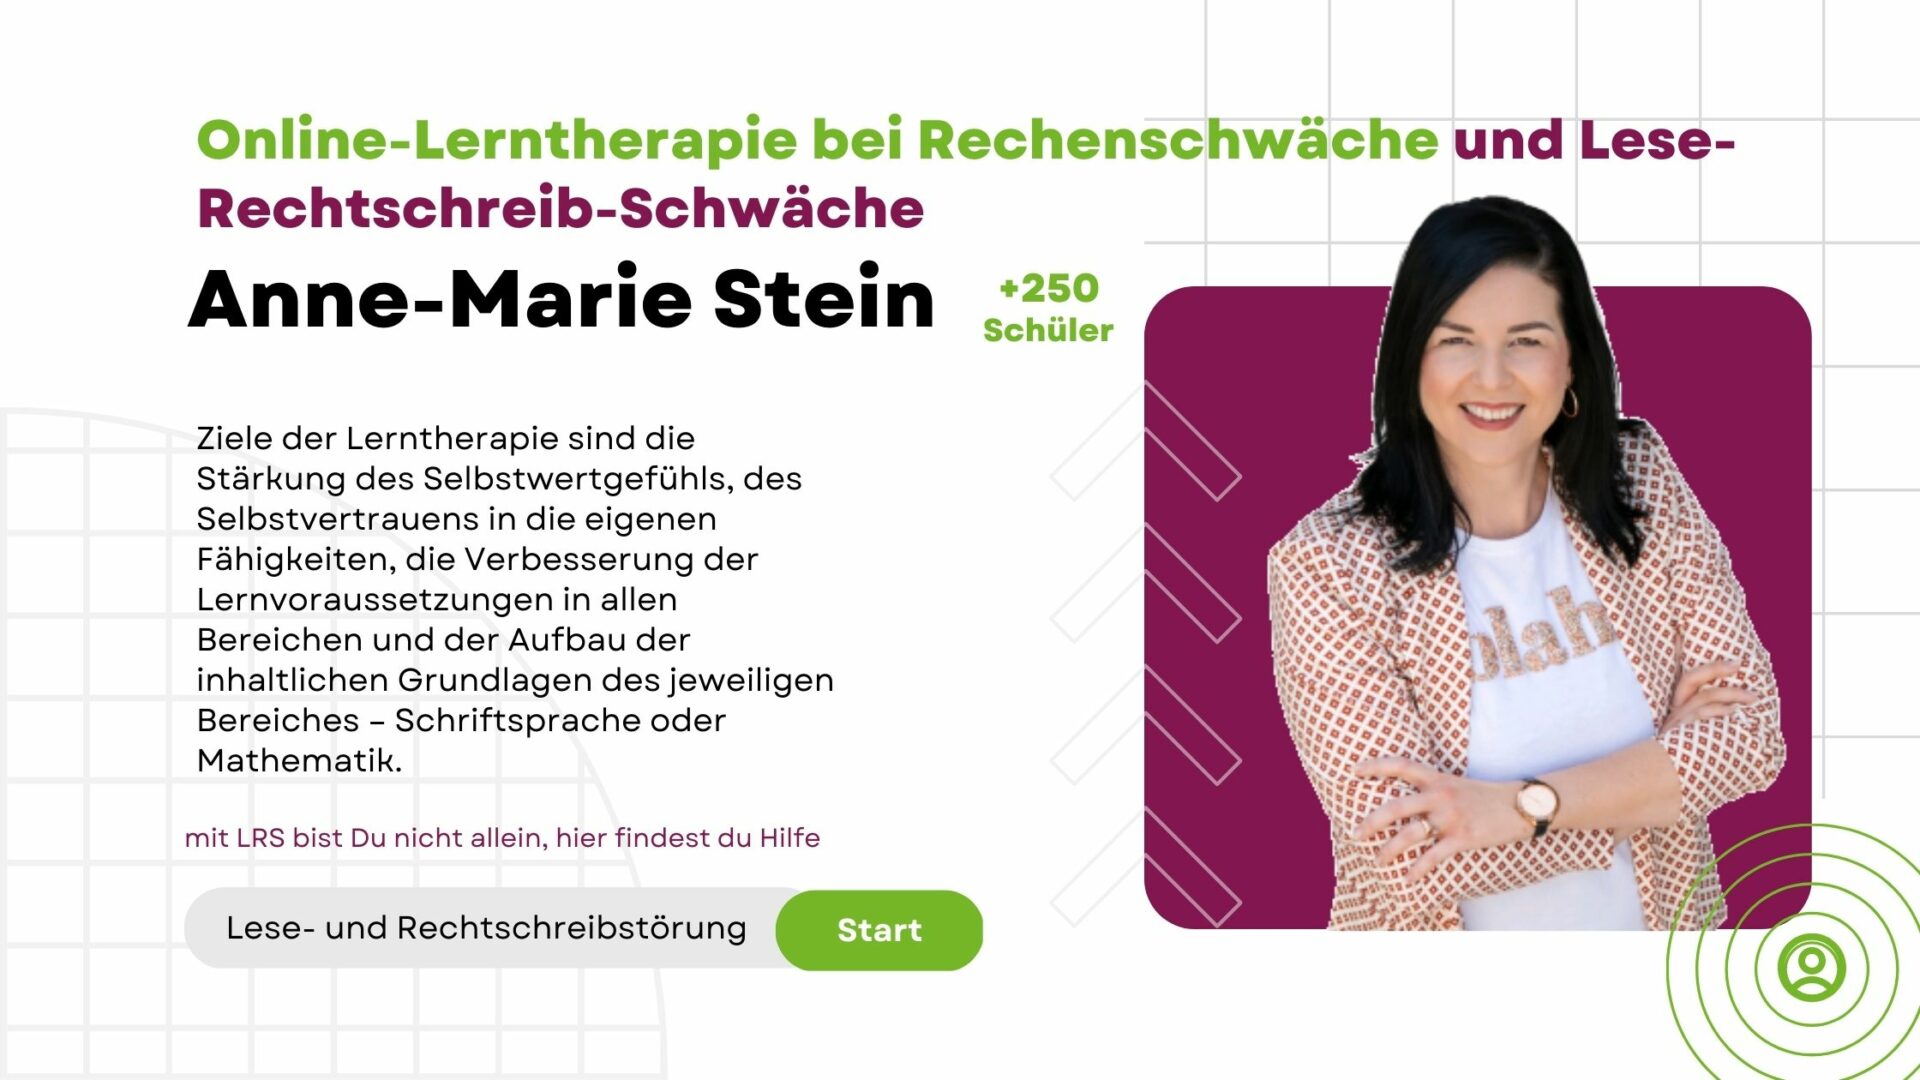 Anne-Marie Stein - Online-Lerntherapie bei Rechenschwäche und Lese-Rechtschreib-Schwäche